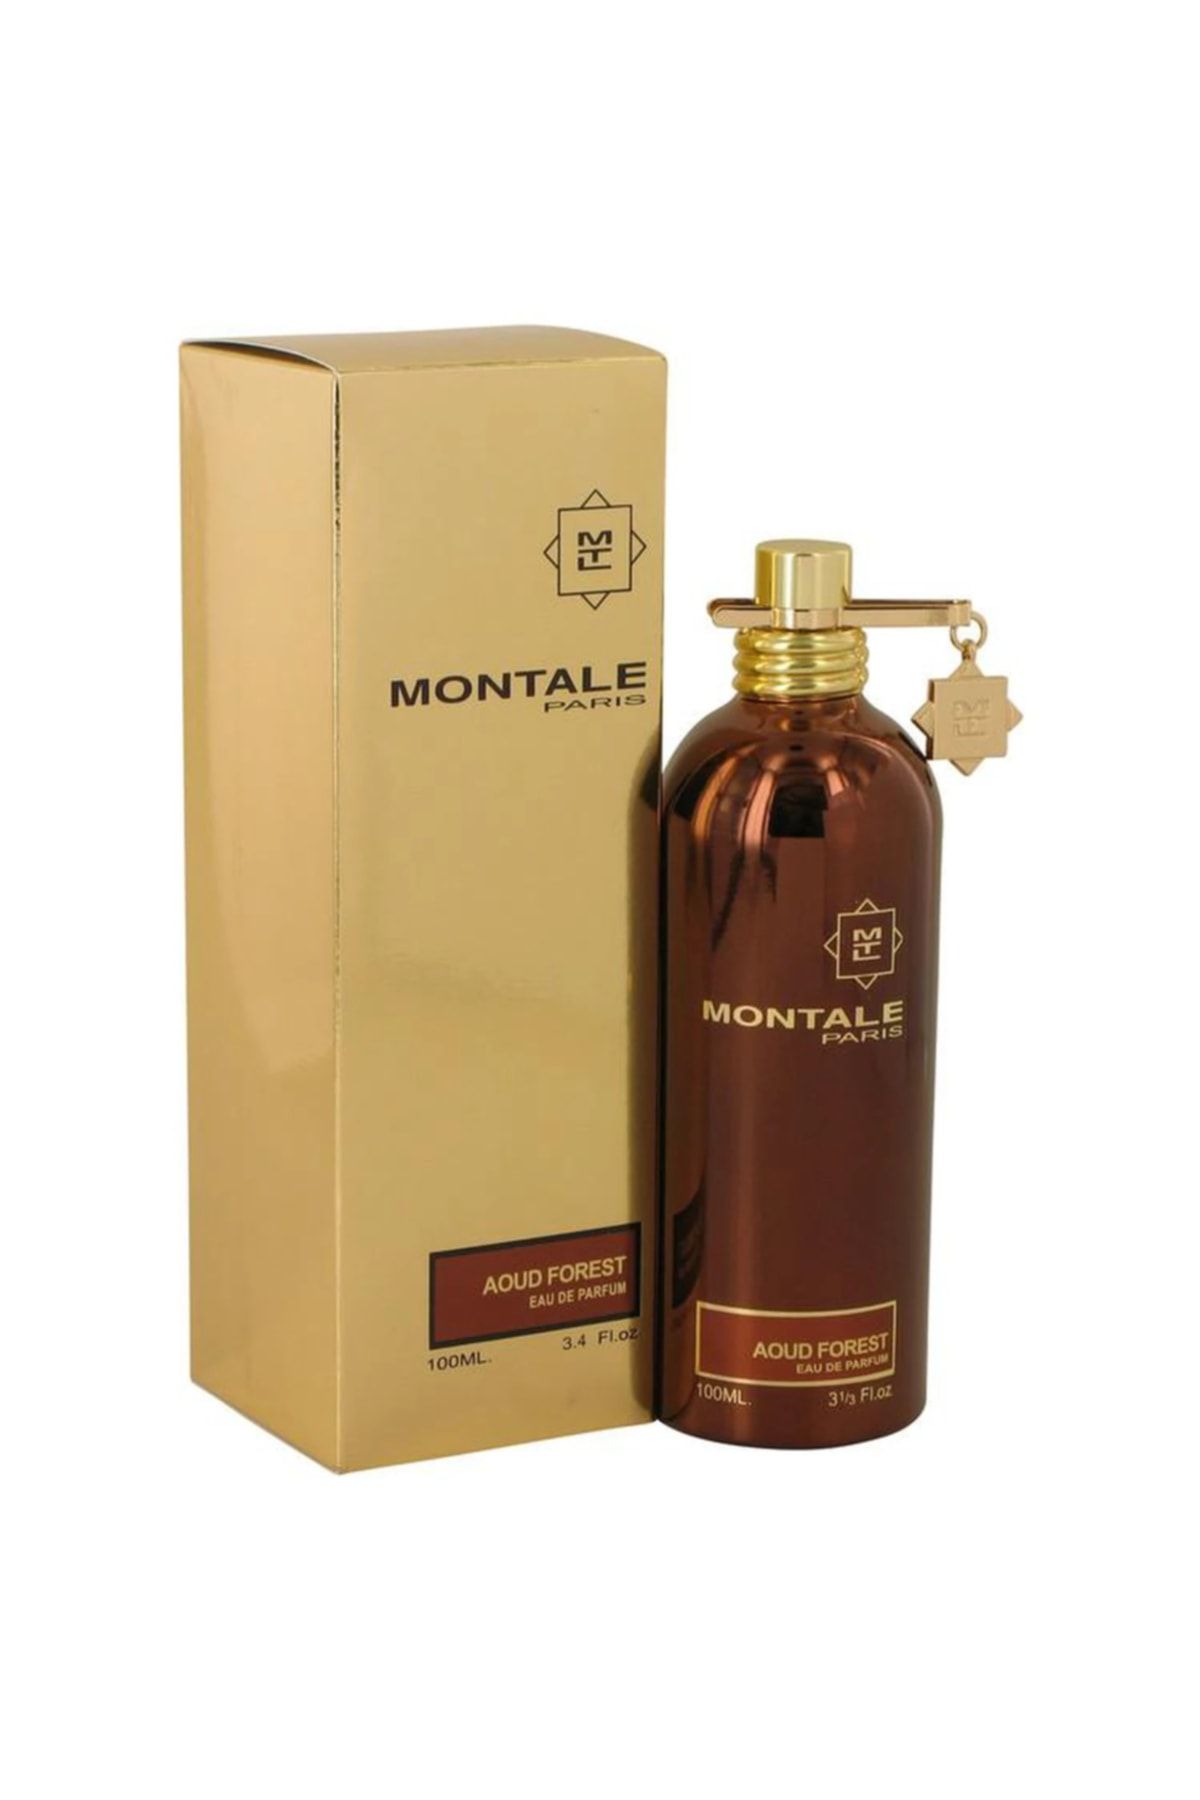 Montale boise. Montale Dark Purple EDP 100ml. Montale "Aoud Forest" 100 ml. Montale Dark Purple. Montale Honey Aoud 100ml.